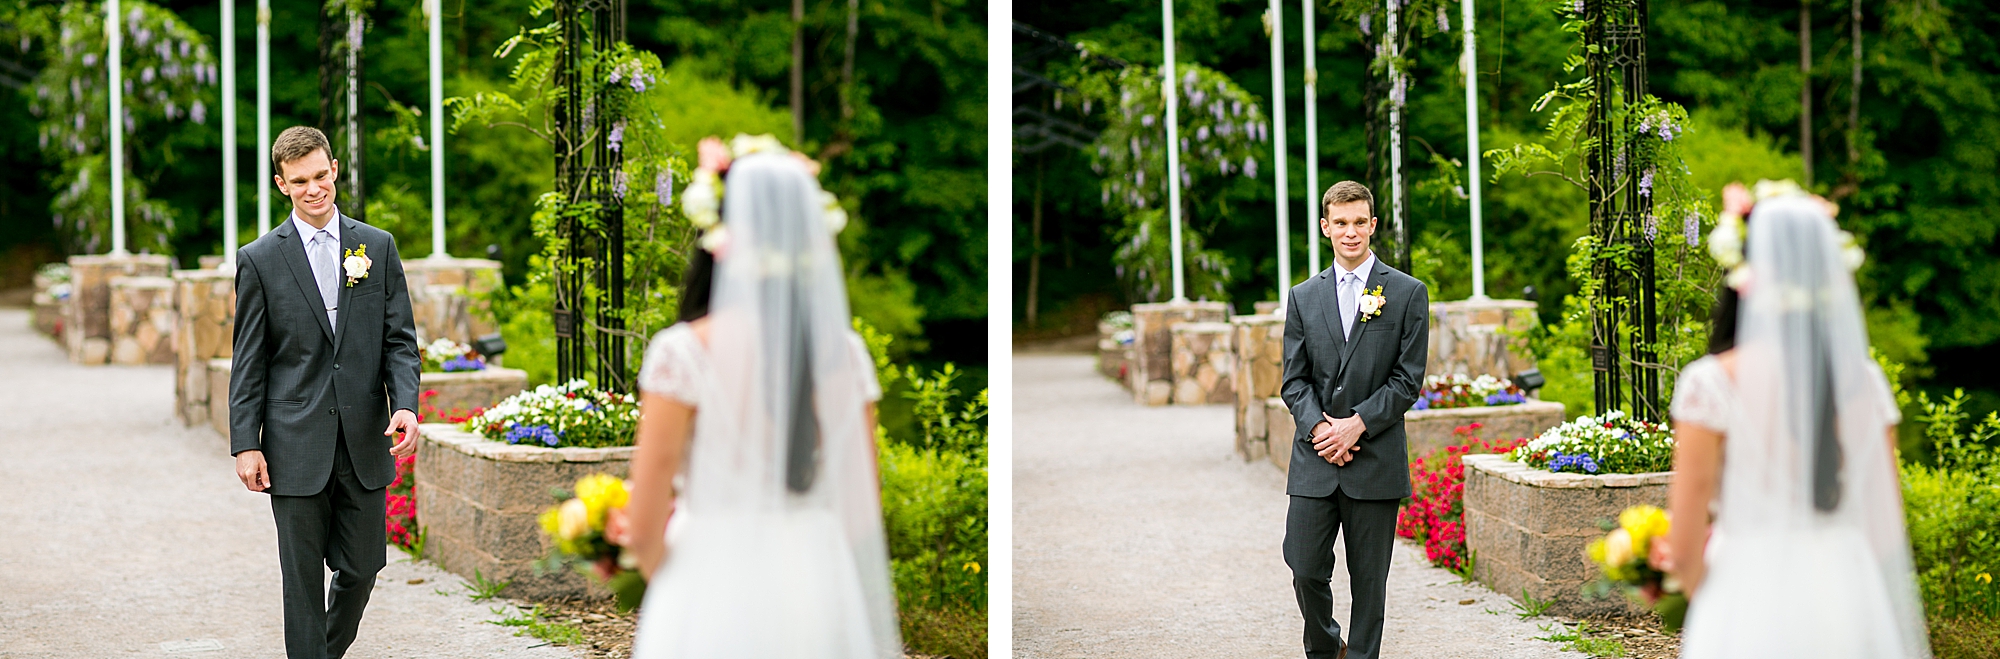 Aldridge Gardens bride and groom first look